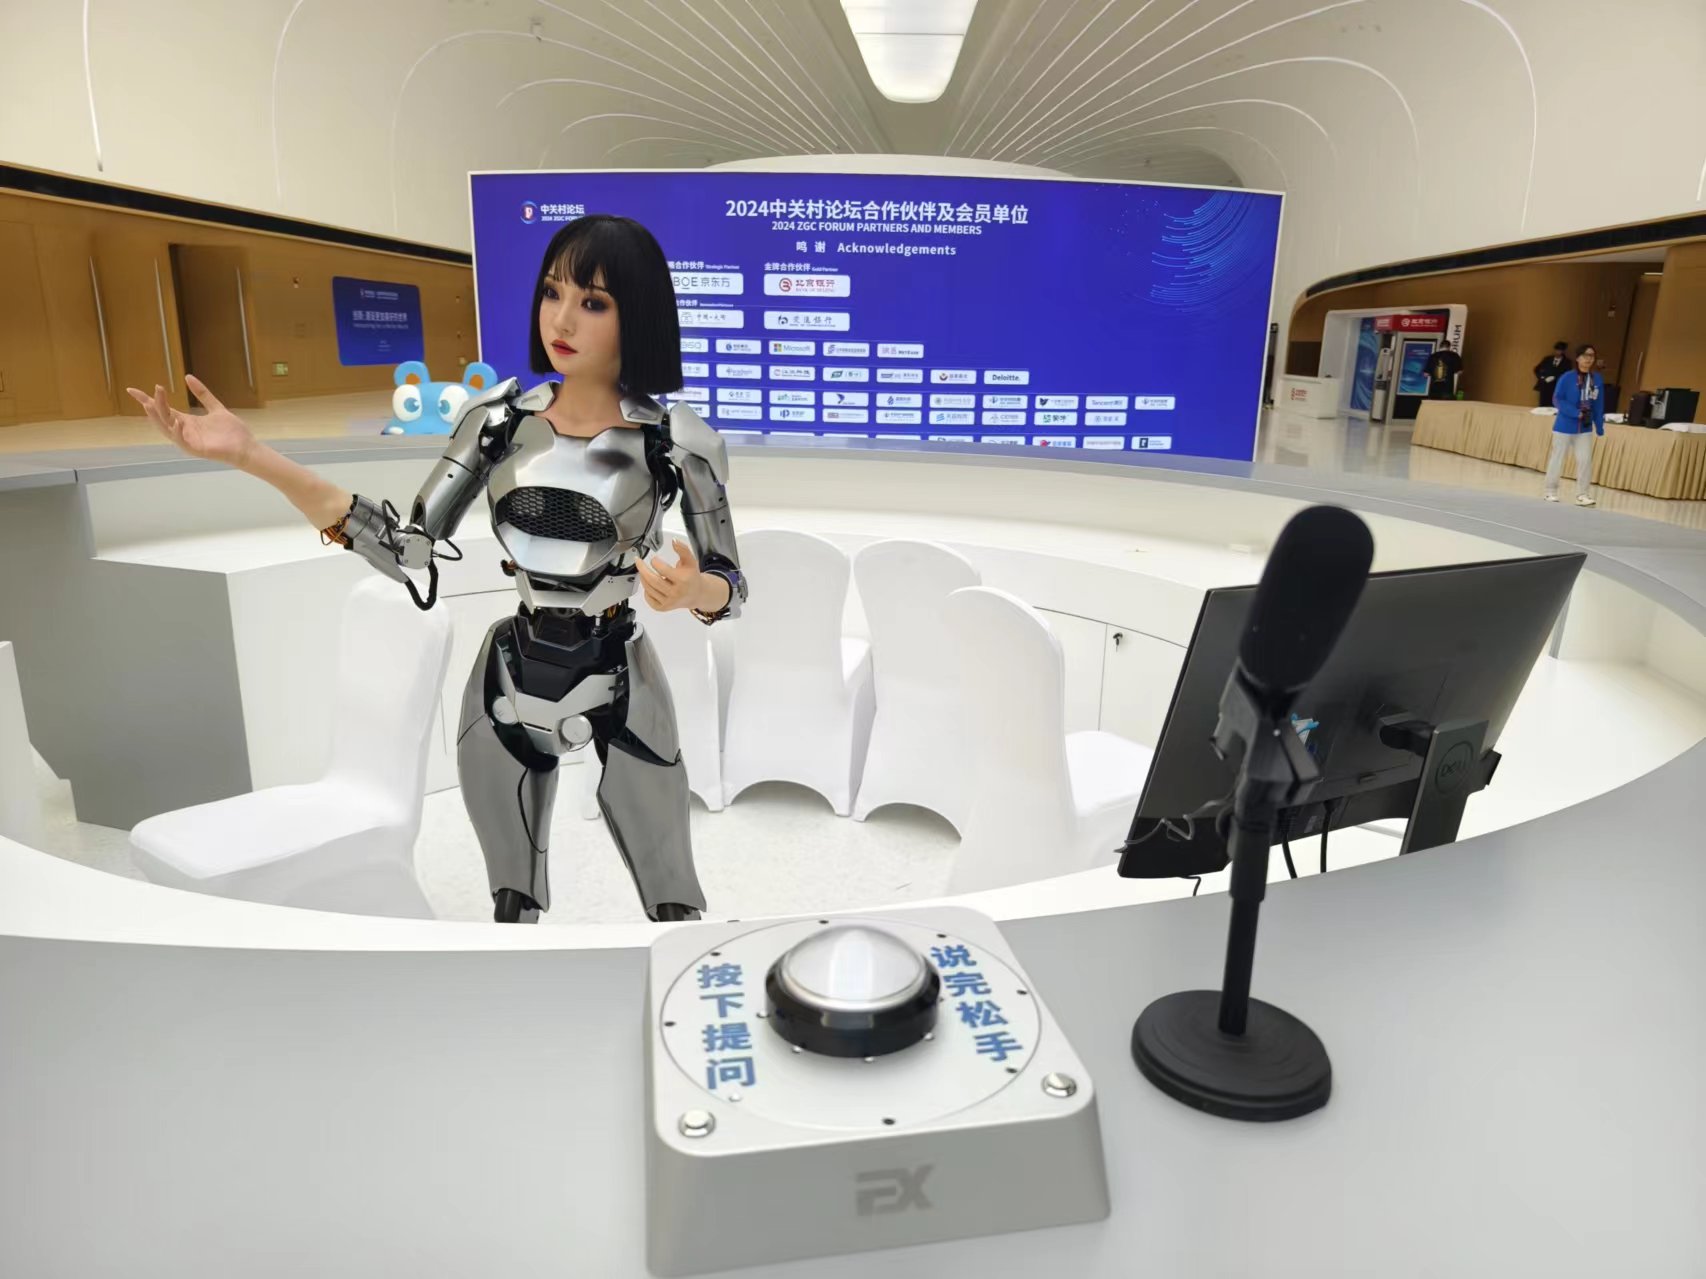 入口諮詢台前放置了一款仿生人形機器人。參會者可與仿生人形機器人對話，詢問中關村論壇簡介等相關問題。新京報記者 浦峰 攝